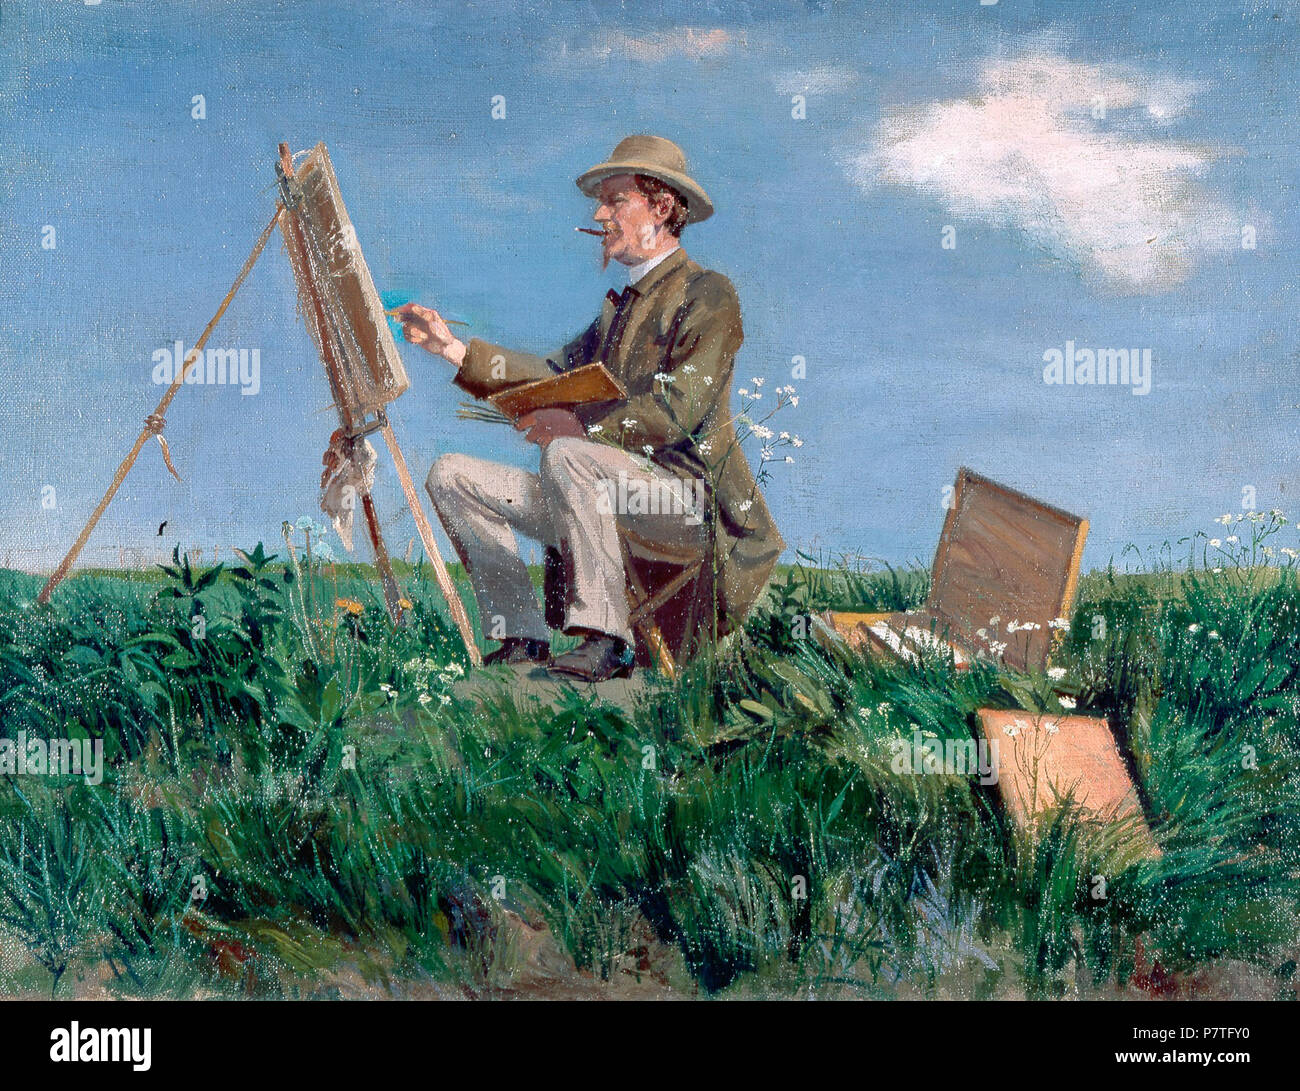 Wilhelm Dreesen *huile sur toile 45 x 60 cm *1893 *400 Wilhelm Dreesen, Jacob par Nöbbe Banque D'Images